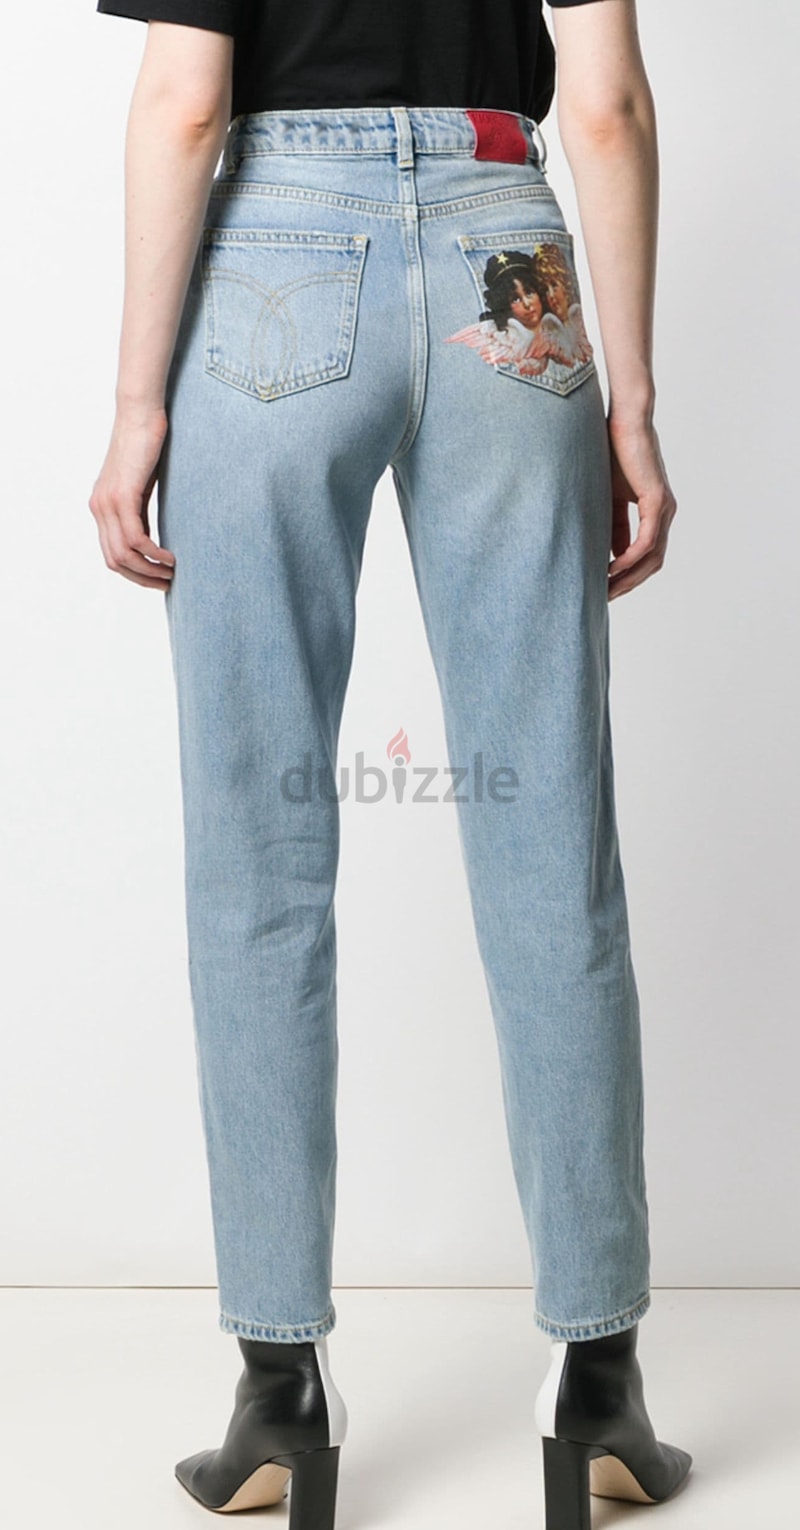 Fiorucci jeans | dubizzle